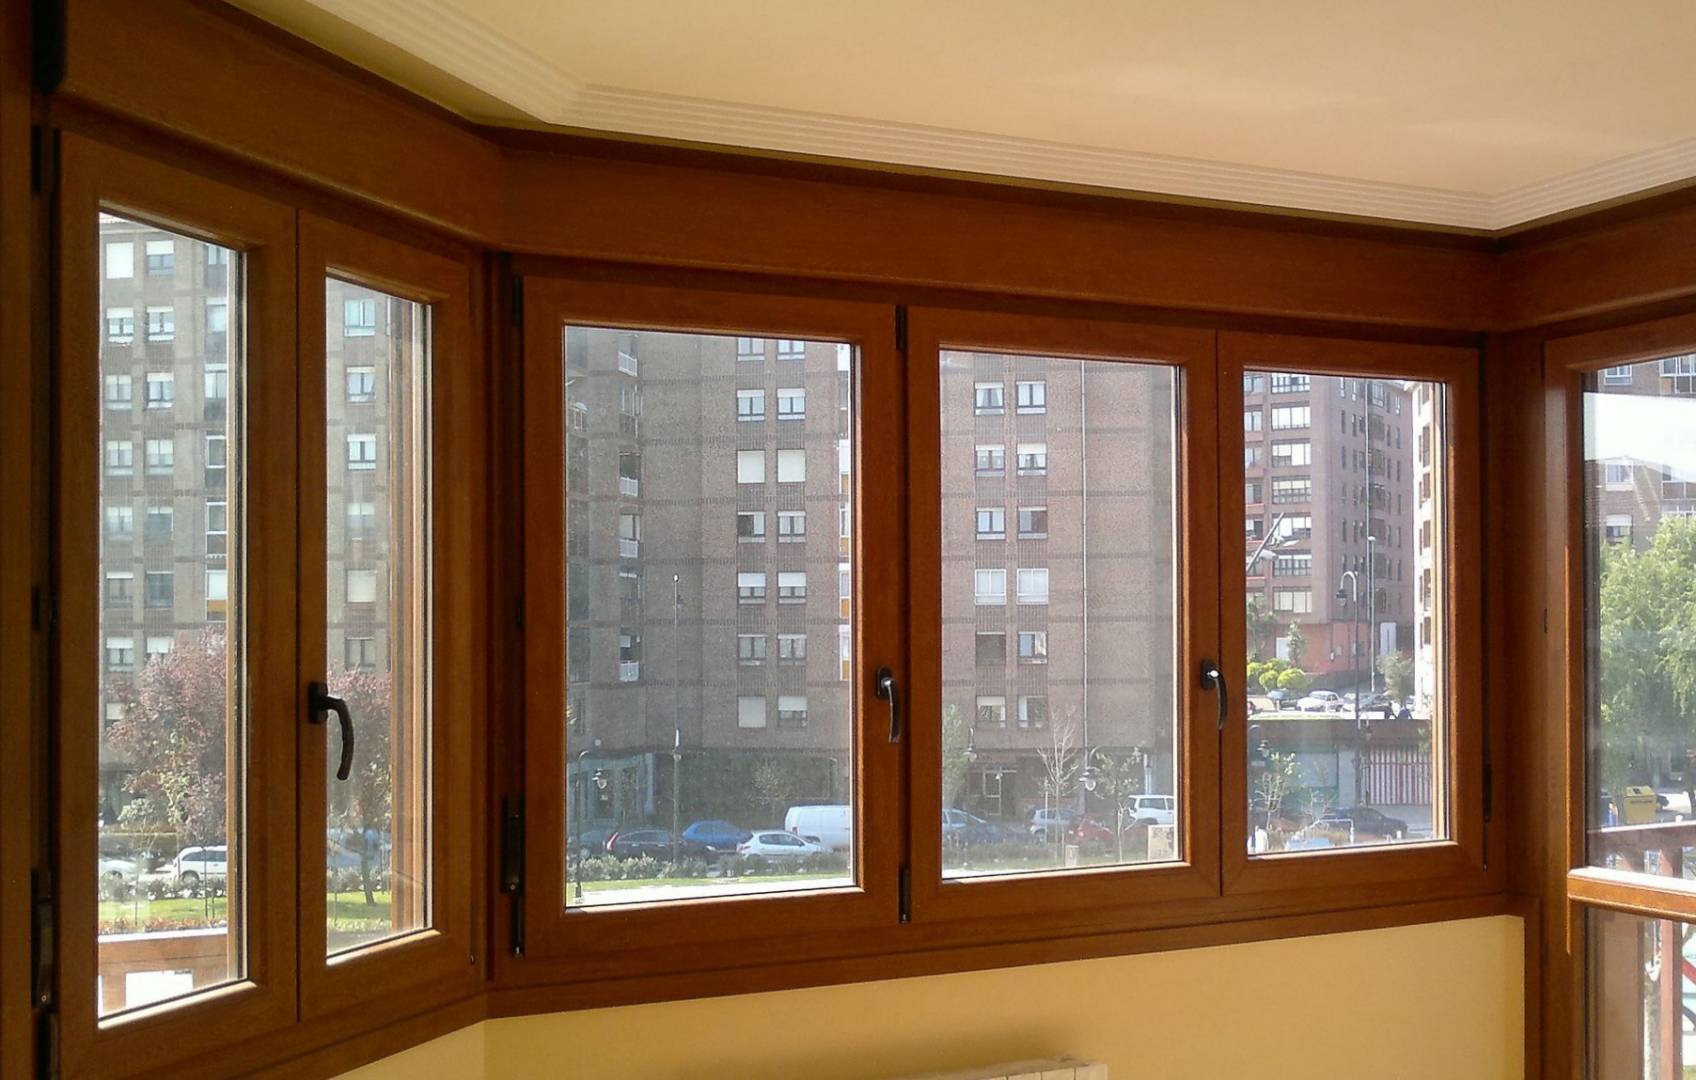 cajones persiana ventanas pvc, Cajones de persiana para ventanas de PVC. Tipos, ventajas y las claves para elegir